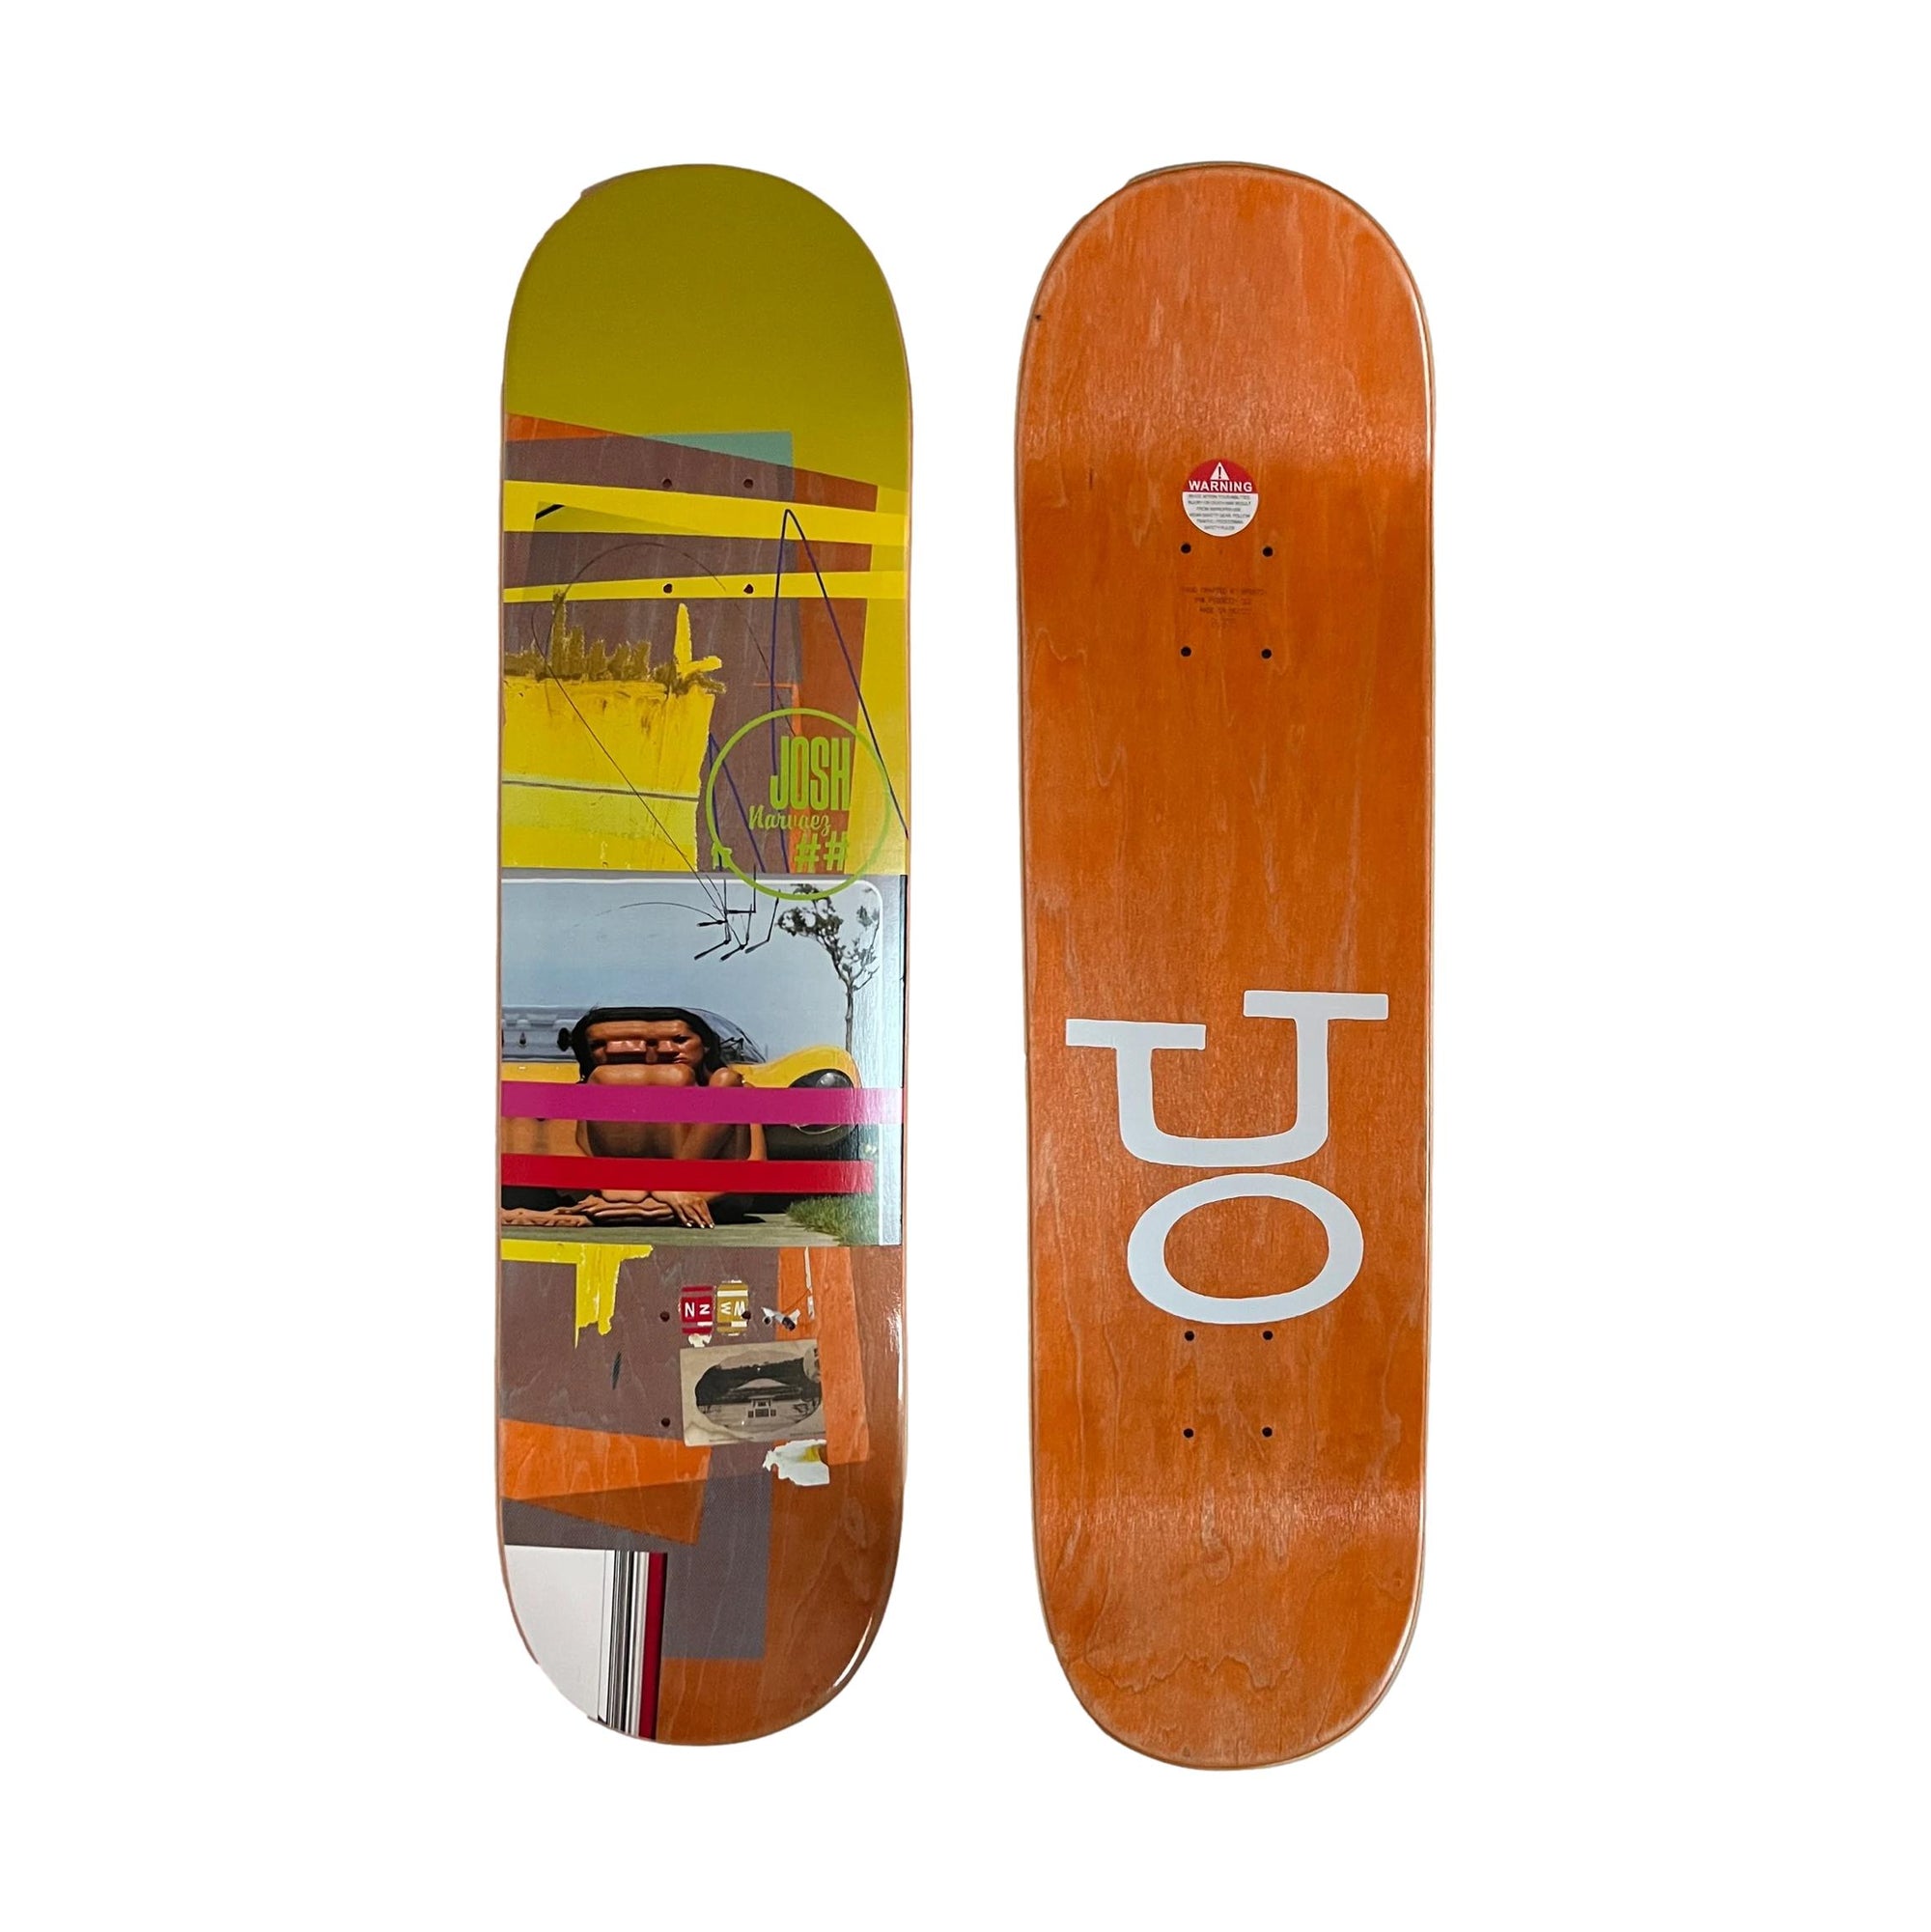 Scumco Josh Narvaez 8.3" Deck - Venue Skateboards